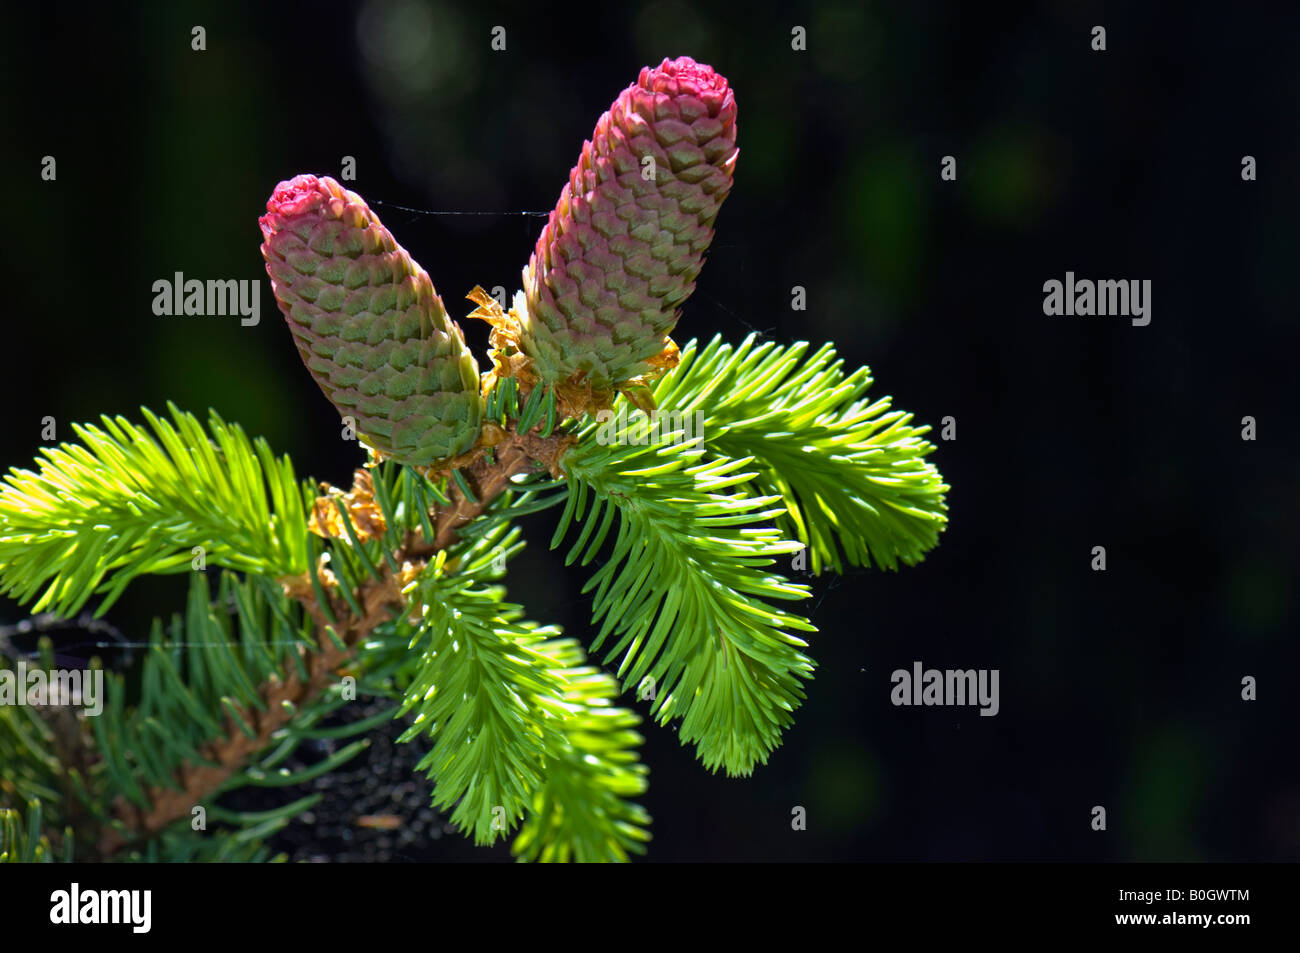 Acerbi fir coni cono verde fresco su giovani abeti aghi di abete Foto Stock